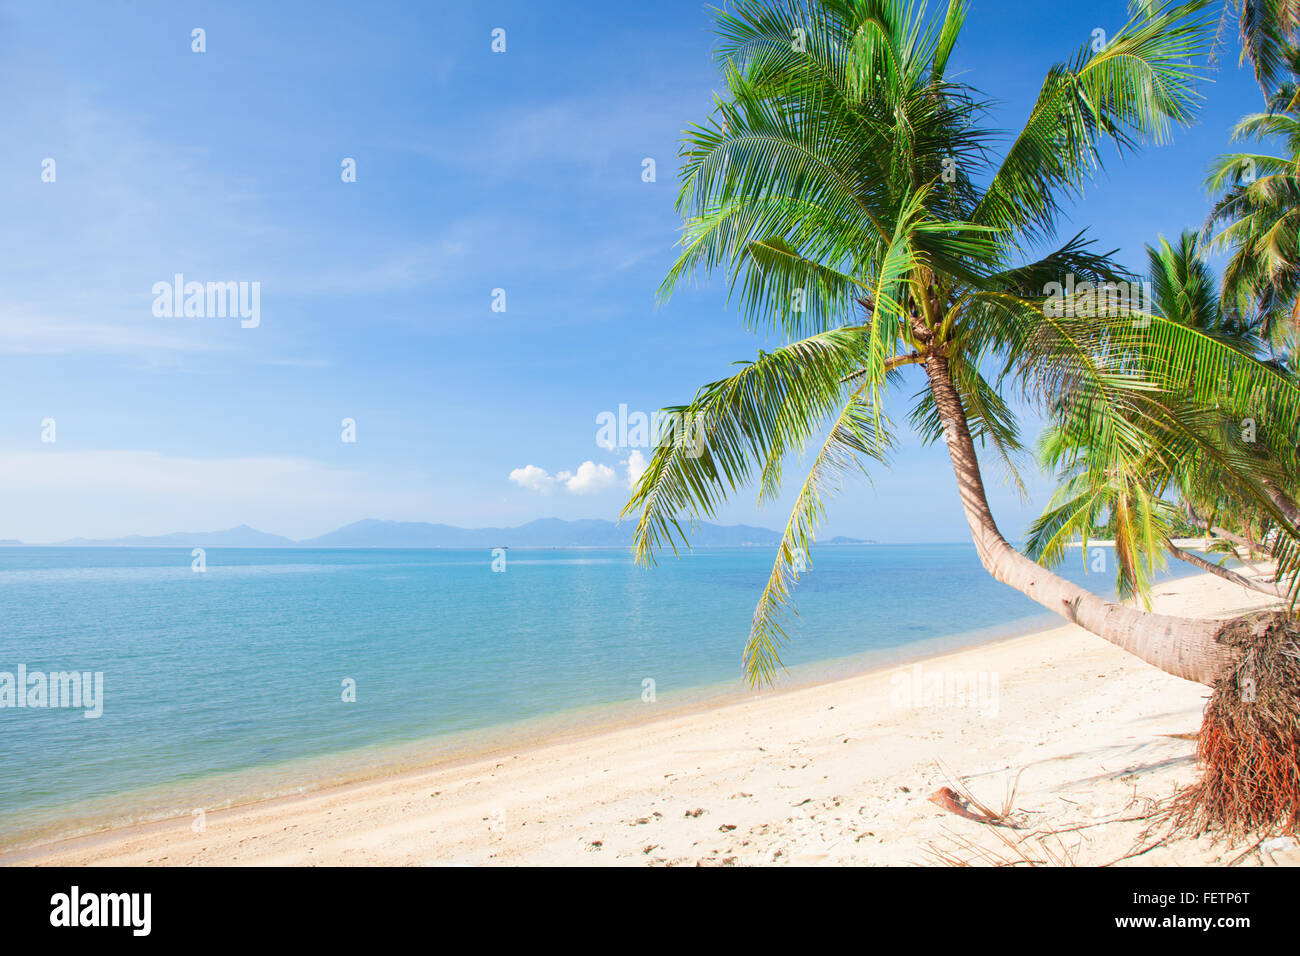 Spiaggia tropicale con palme da cocco e mare Foto Stock